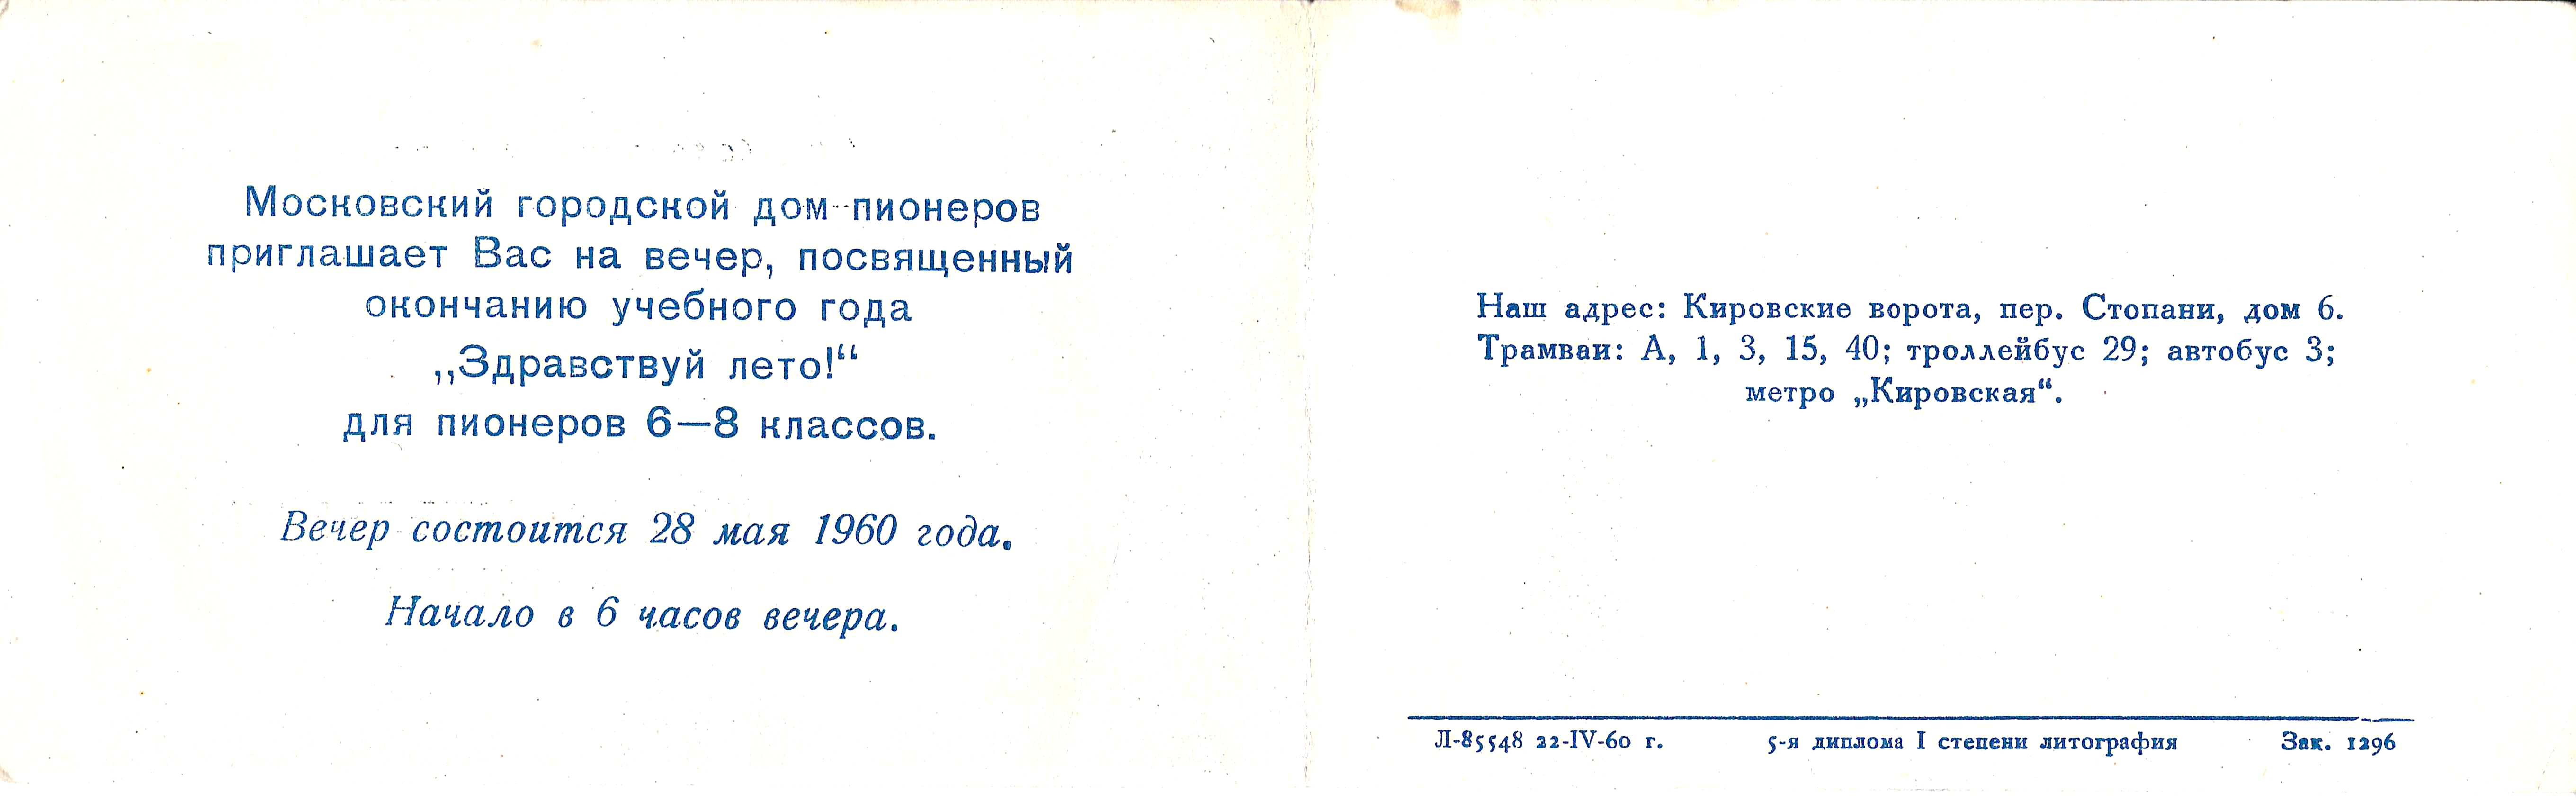 Пригласительный билет Московского городского дома пионеров на вечер, посвящённый окончанию учебного года «Здравствуй лето!» 28 мая 1960 года.